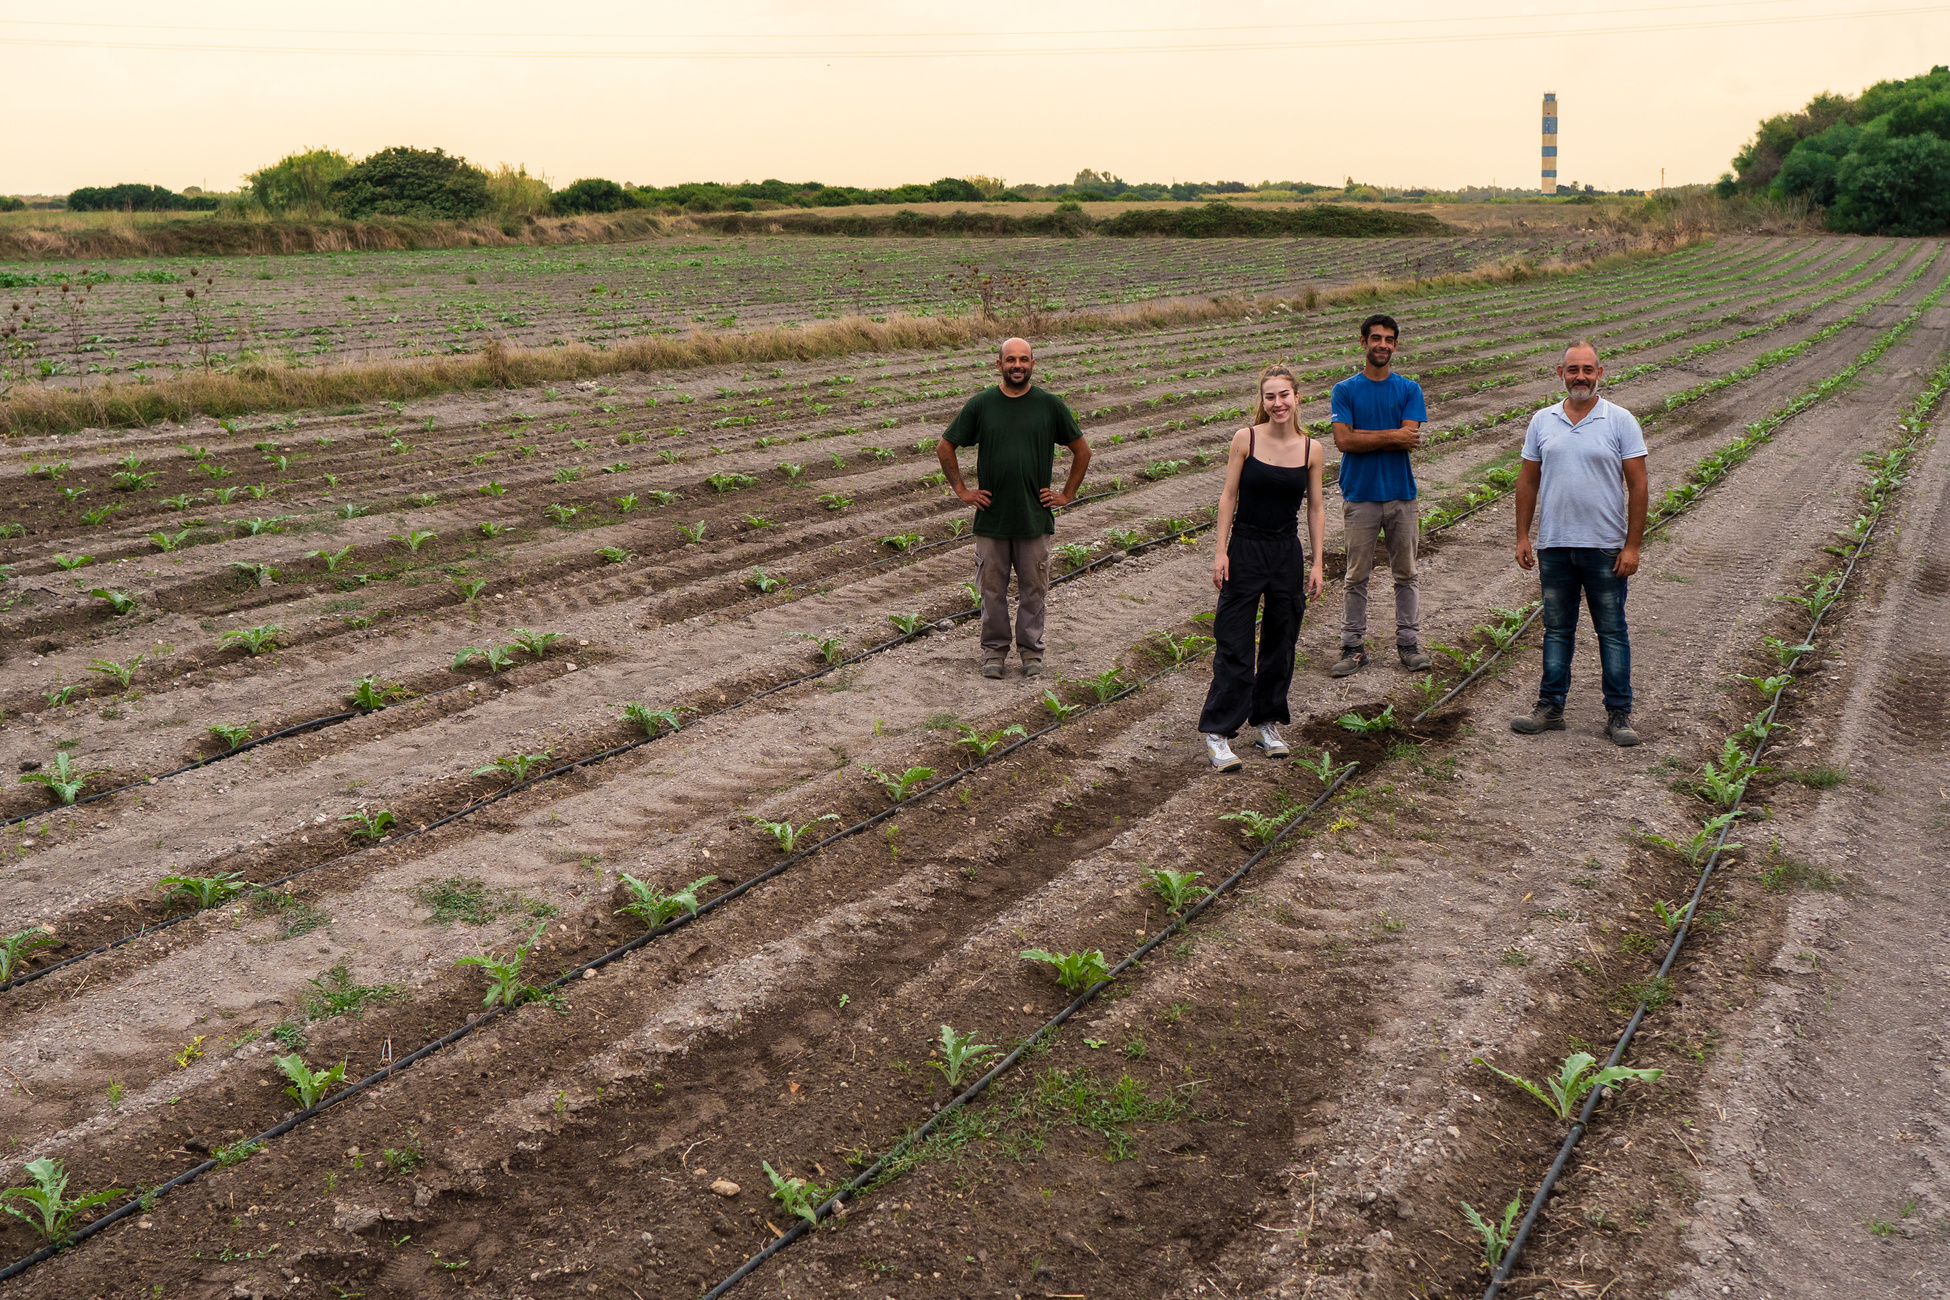 Regenerative Farming Group of Farmers in a Field